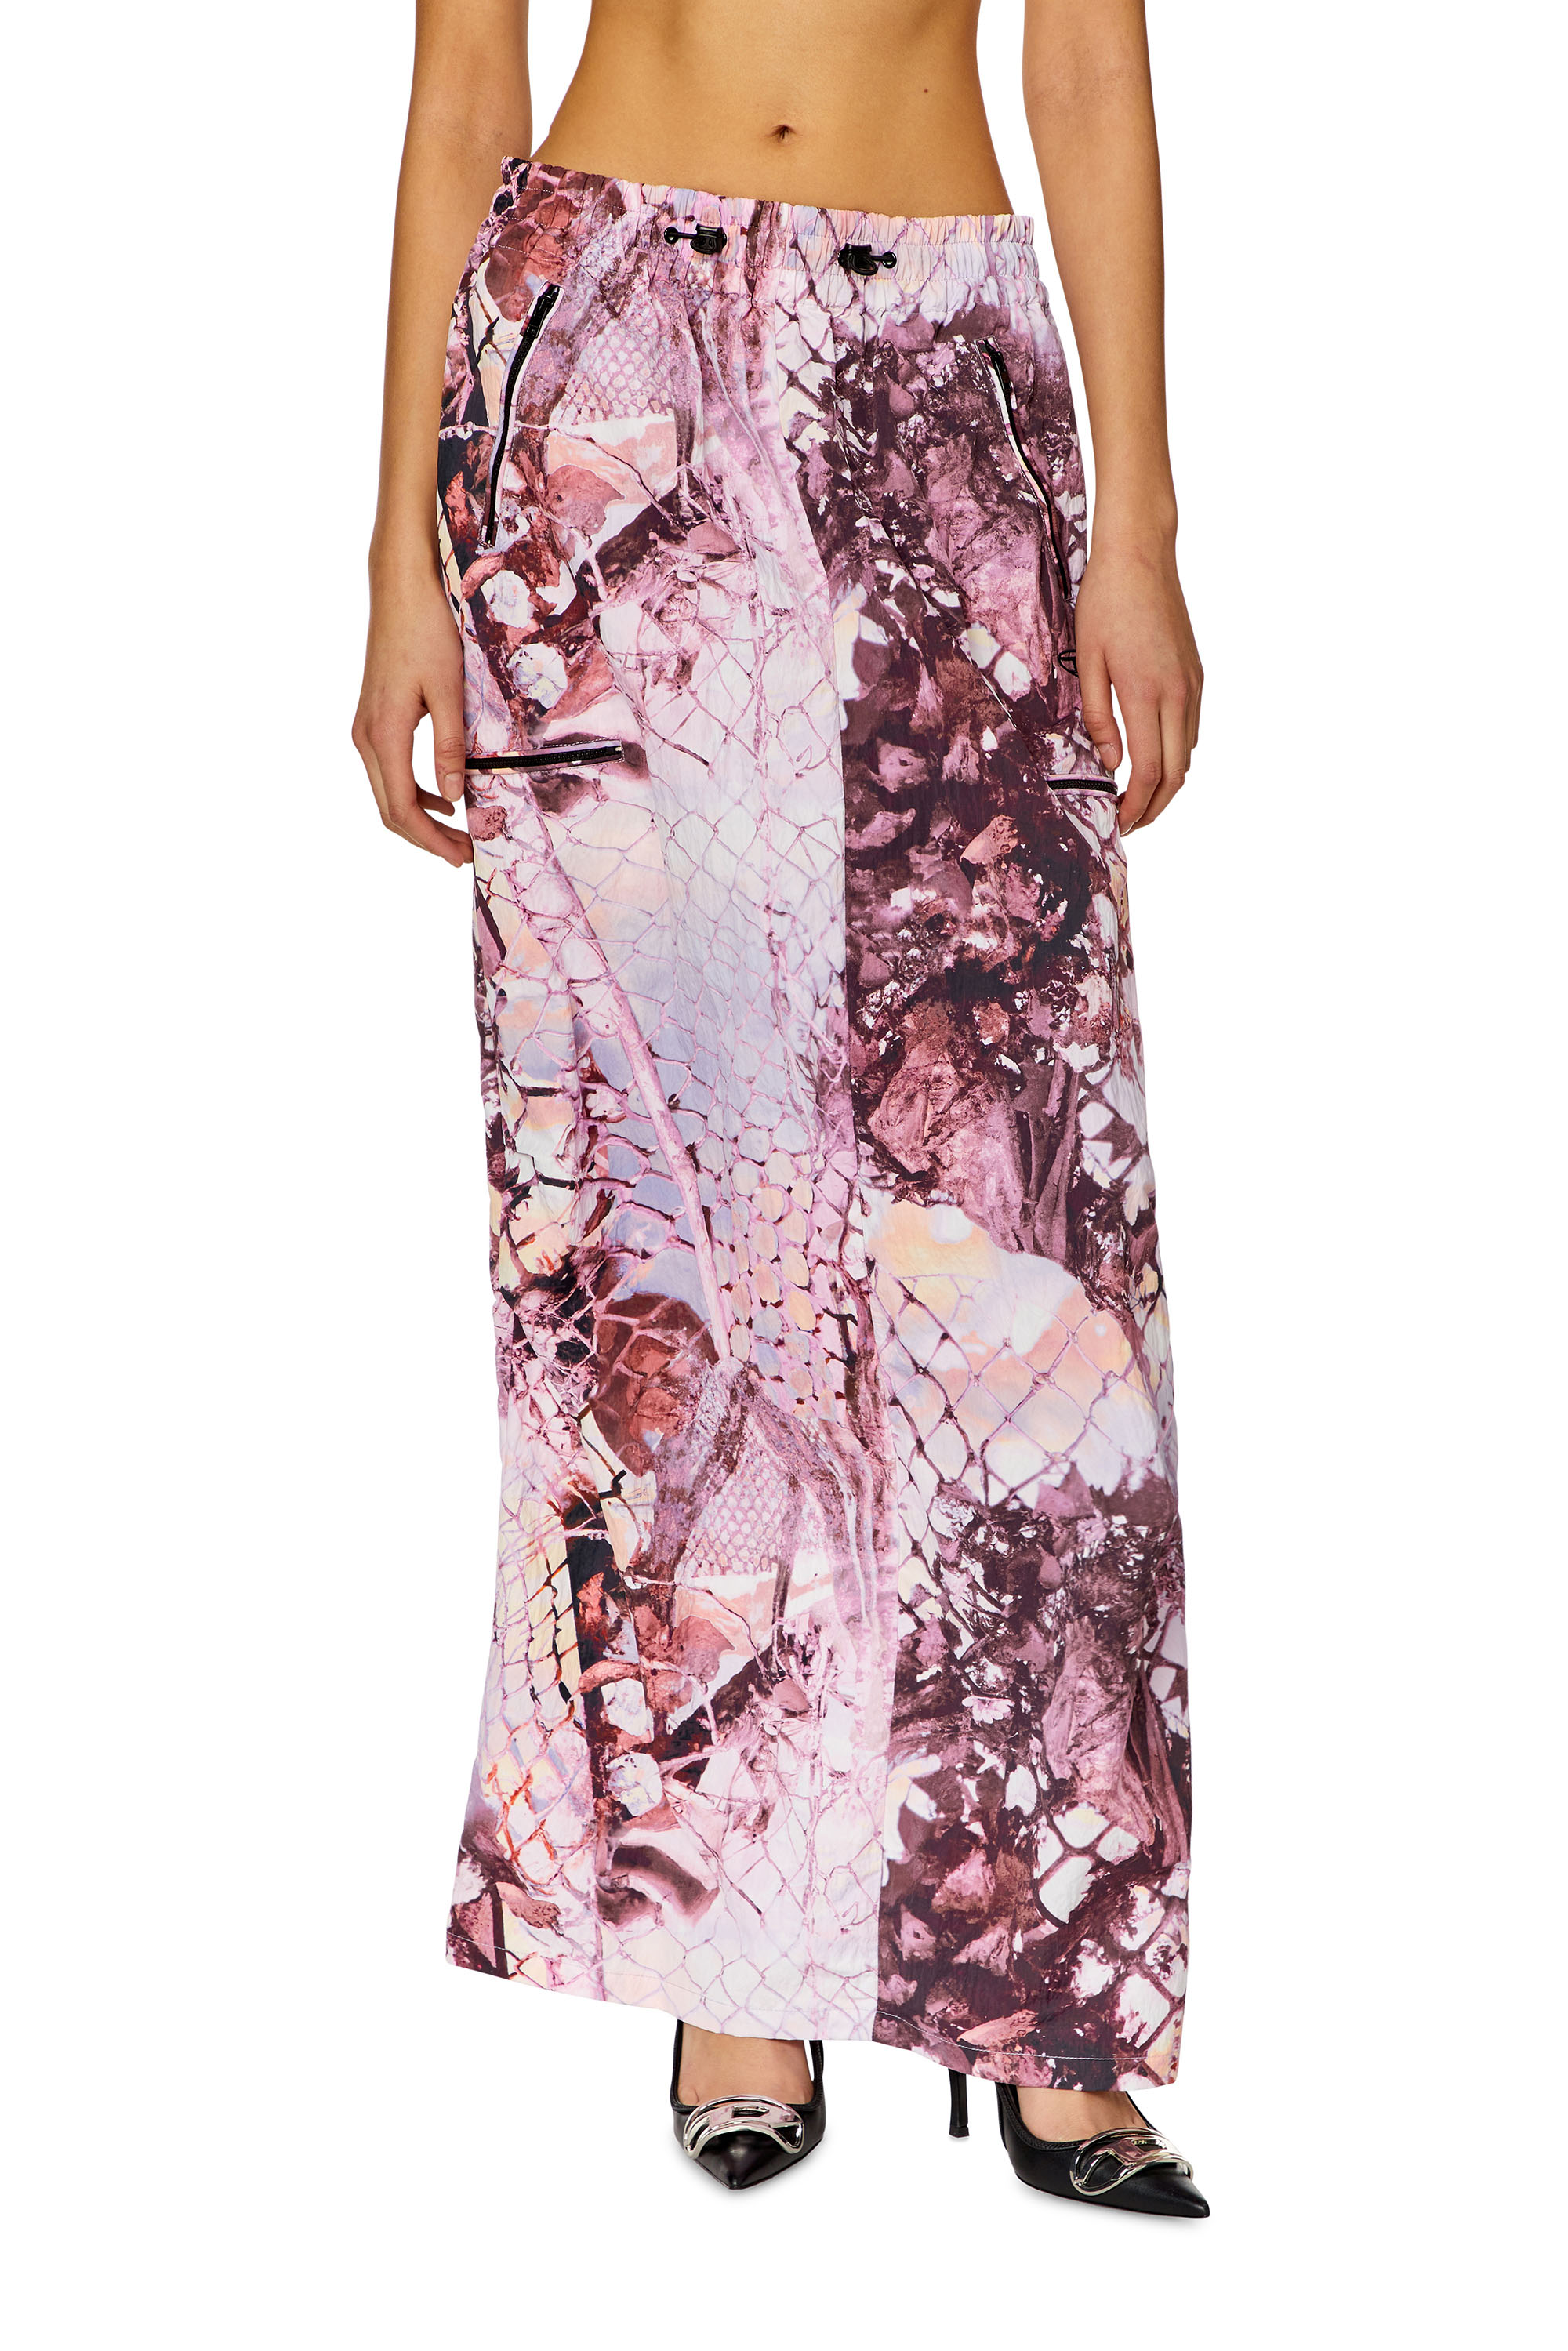 Diesel - O-DIAMY-N1, Female Long skirt in printed crinkled nylon in Violet - Image 1